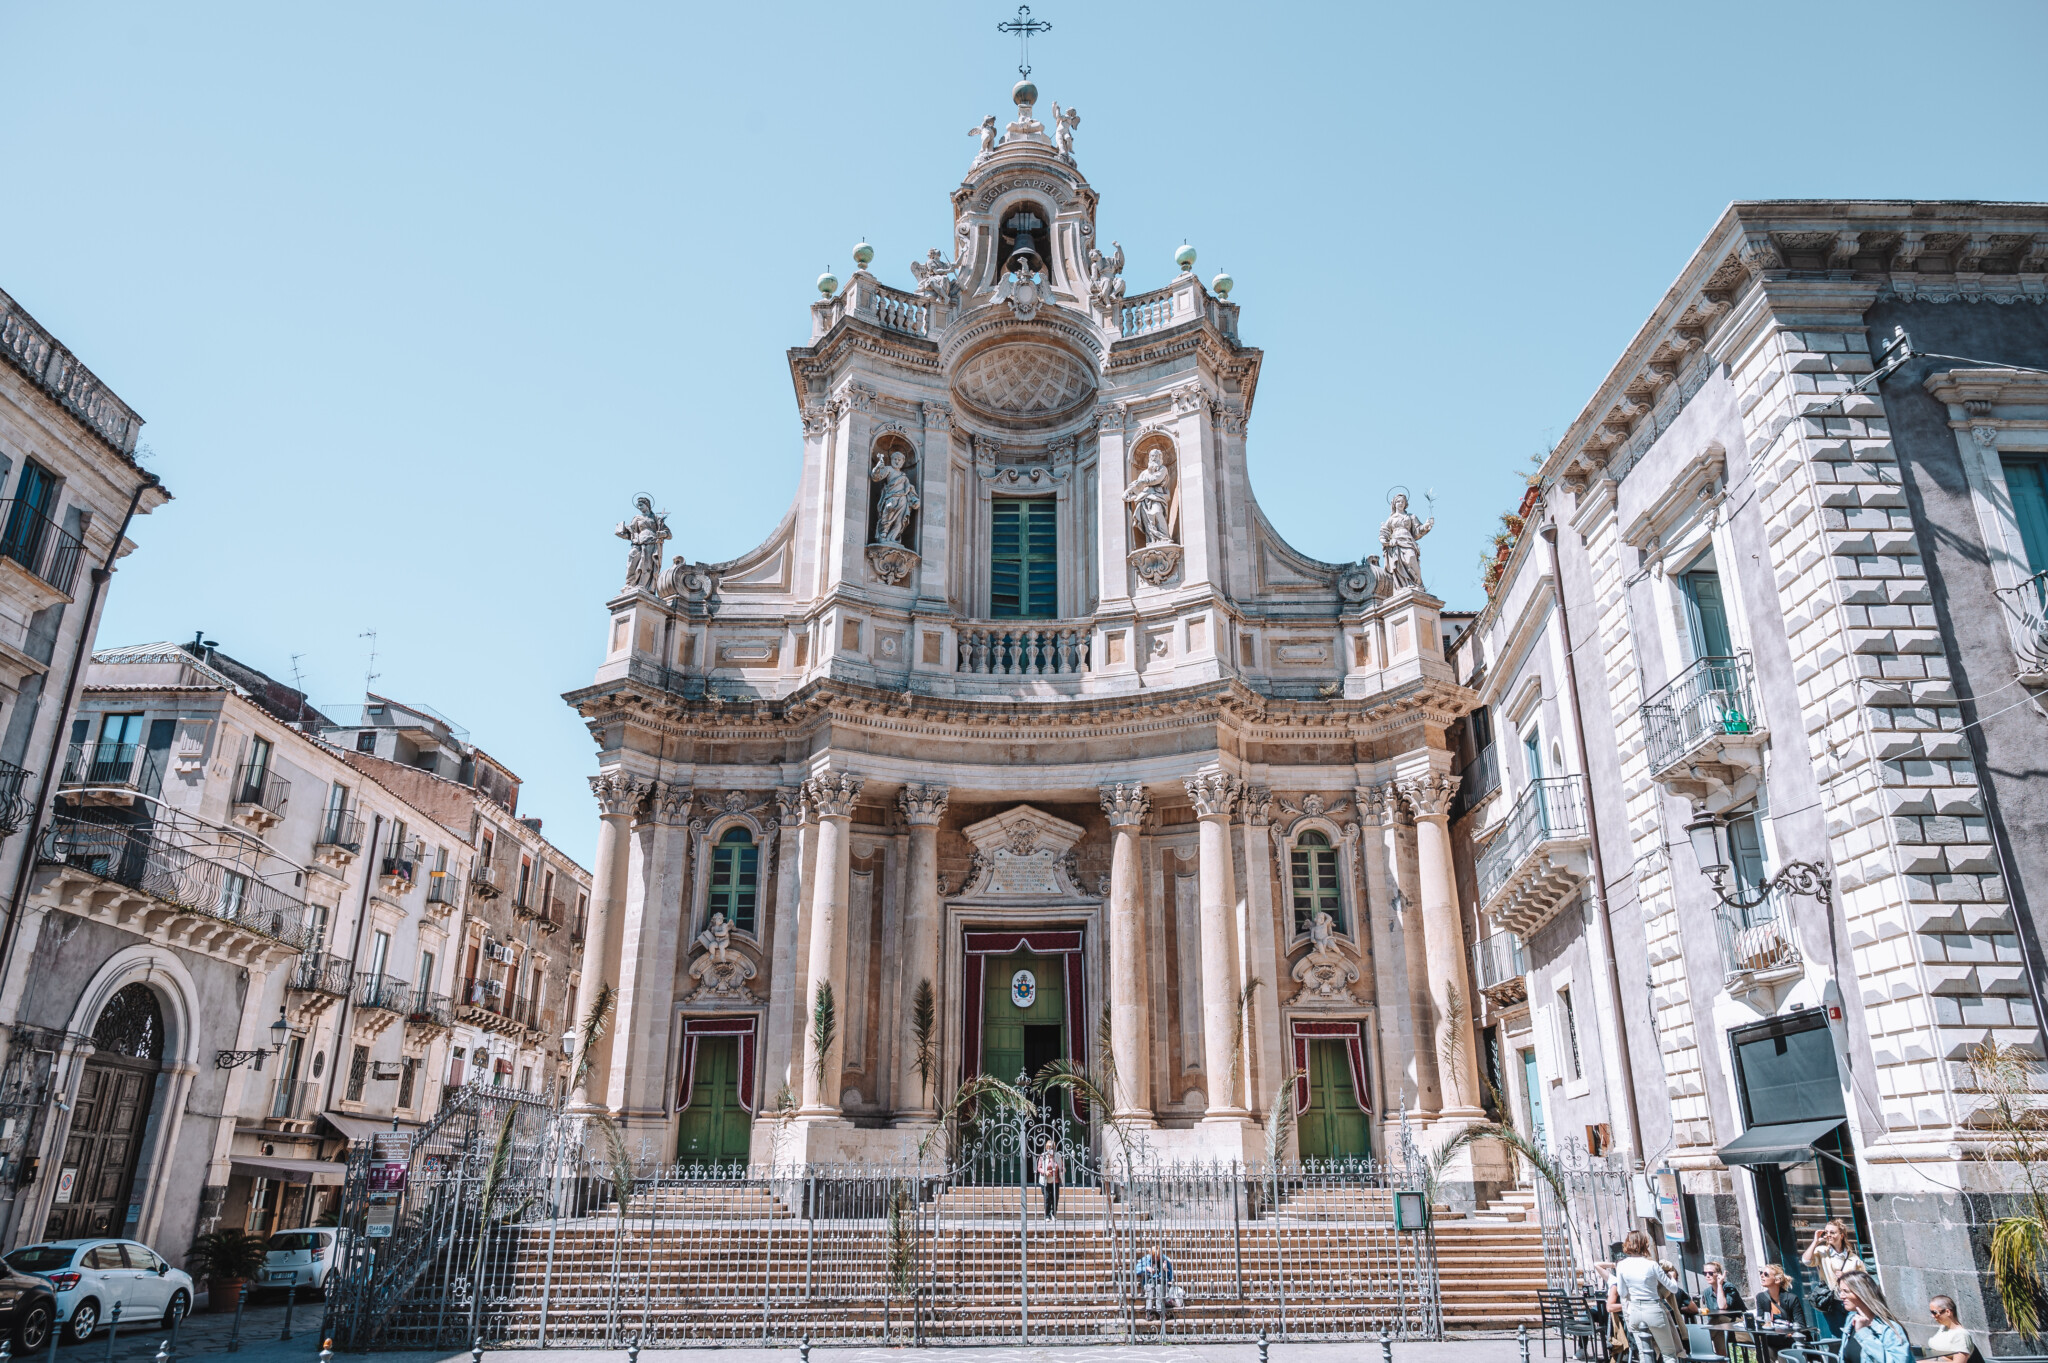 Die Kirche Kollegiata ist eine der berühmtesten Sehenswürdigkeiten Catanias